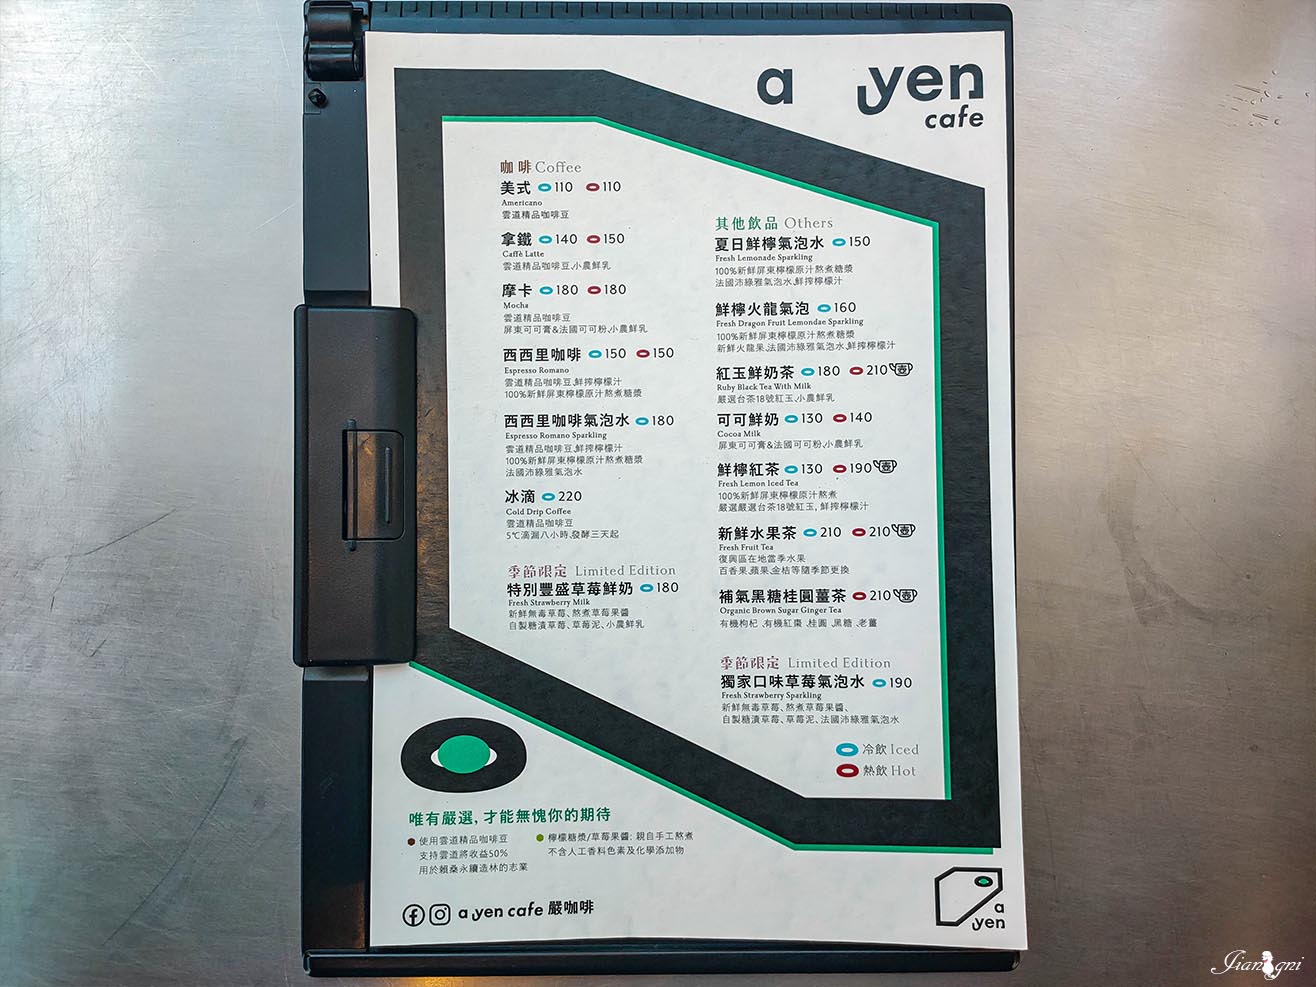 A yen cafe嚴咖啡 清水模建築 美式輕工業 google評論4.9顆星 寵物友善 @蔣妮の冰斗人生